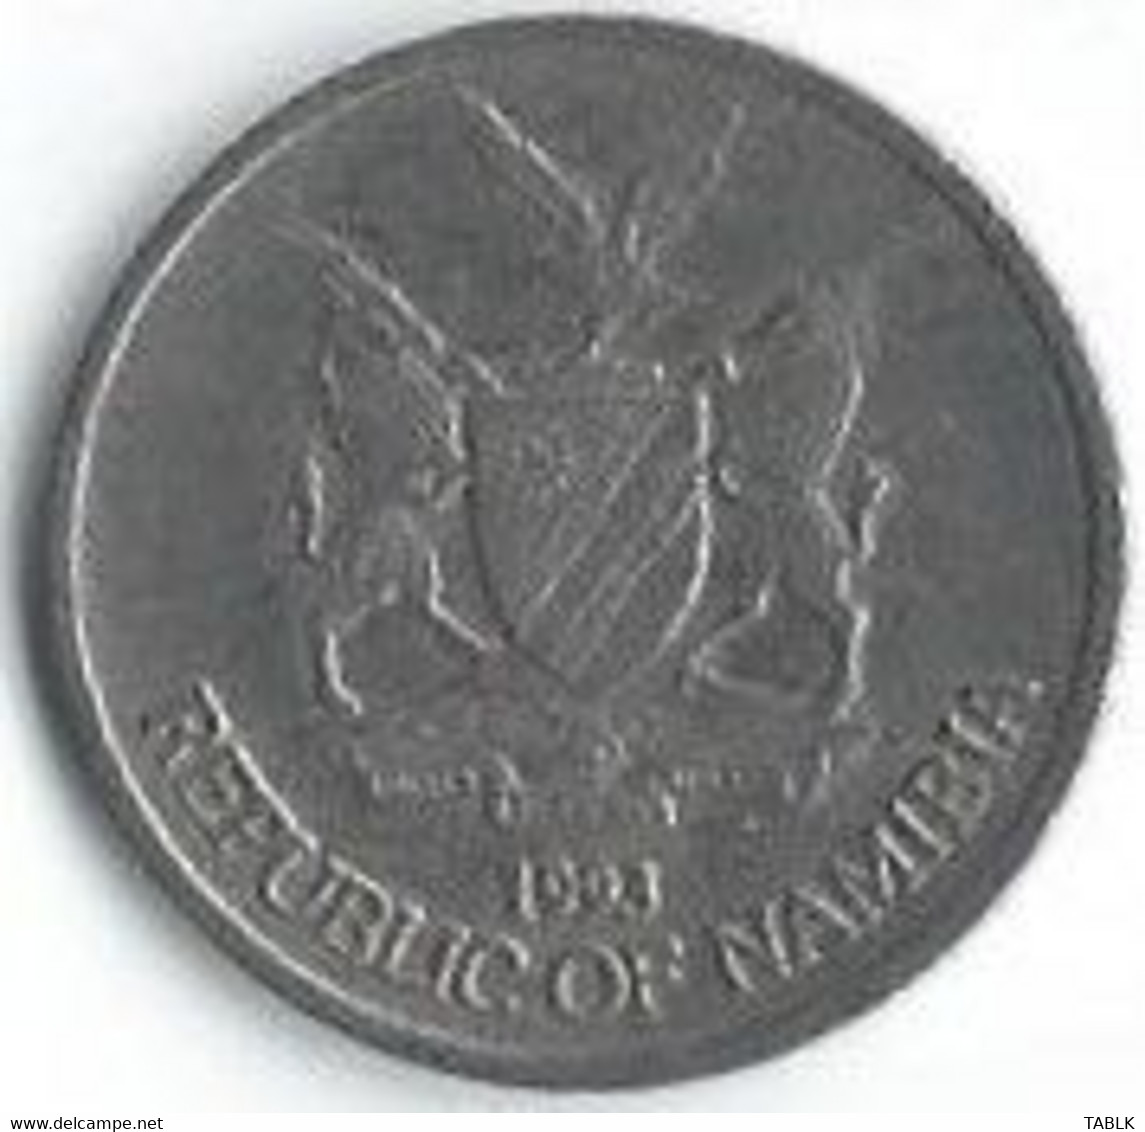 MM522 - NAMIBIË - NAMIBIA - 10 CENTS 1993 - Namibië